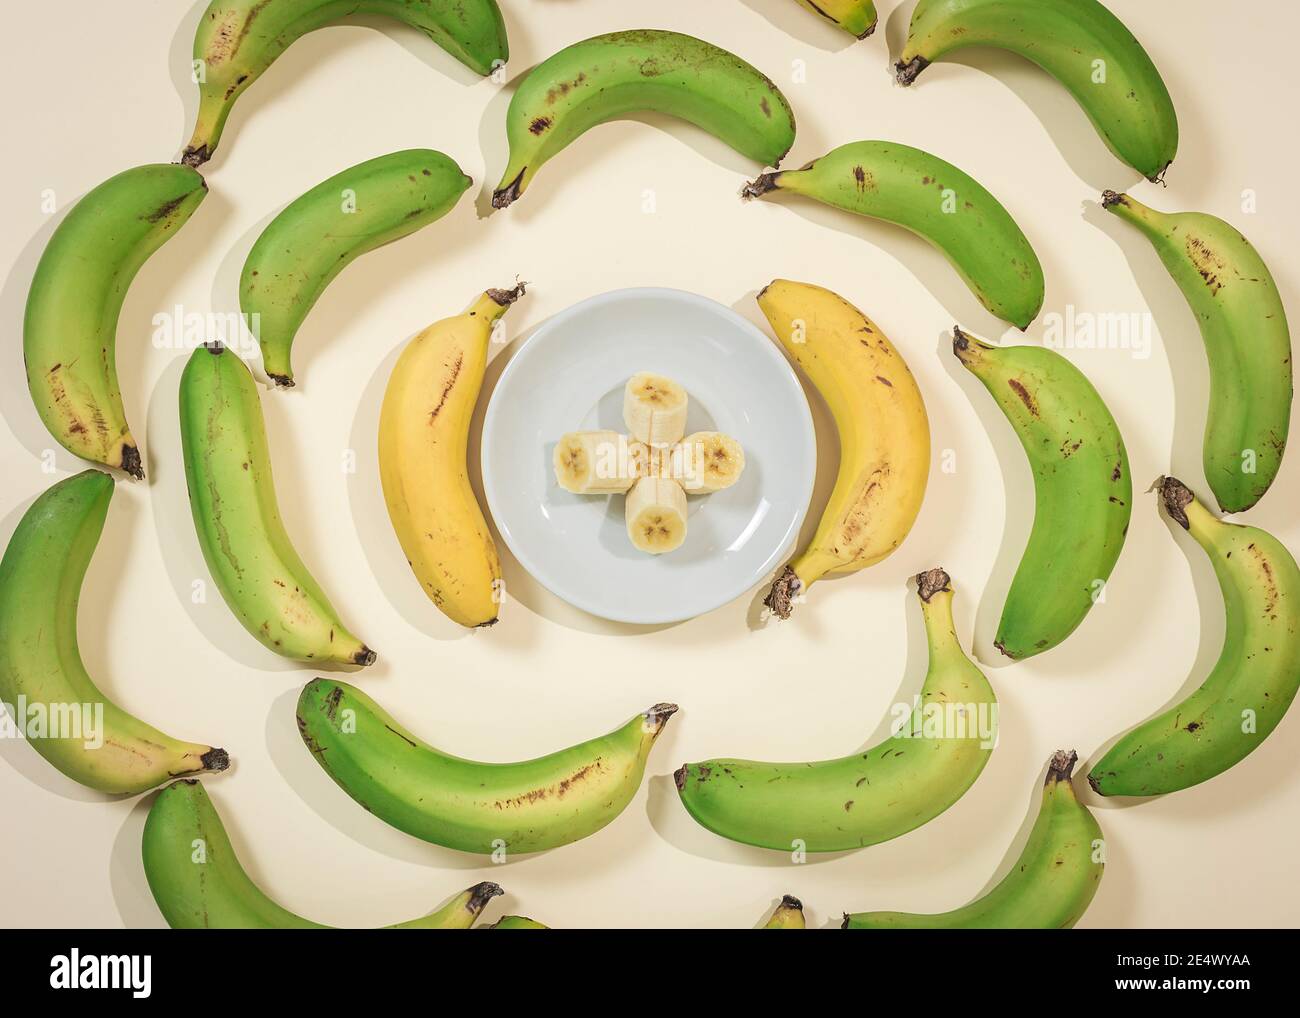 Bananes dans un cercle avec une assiette au centre avec des tranches de banane. La photo est prise d'un point de vue supérieur et les couleurs douces prédominent. Banque D'Images